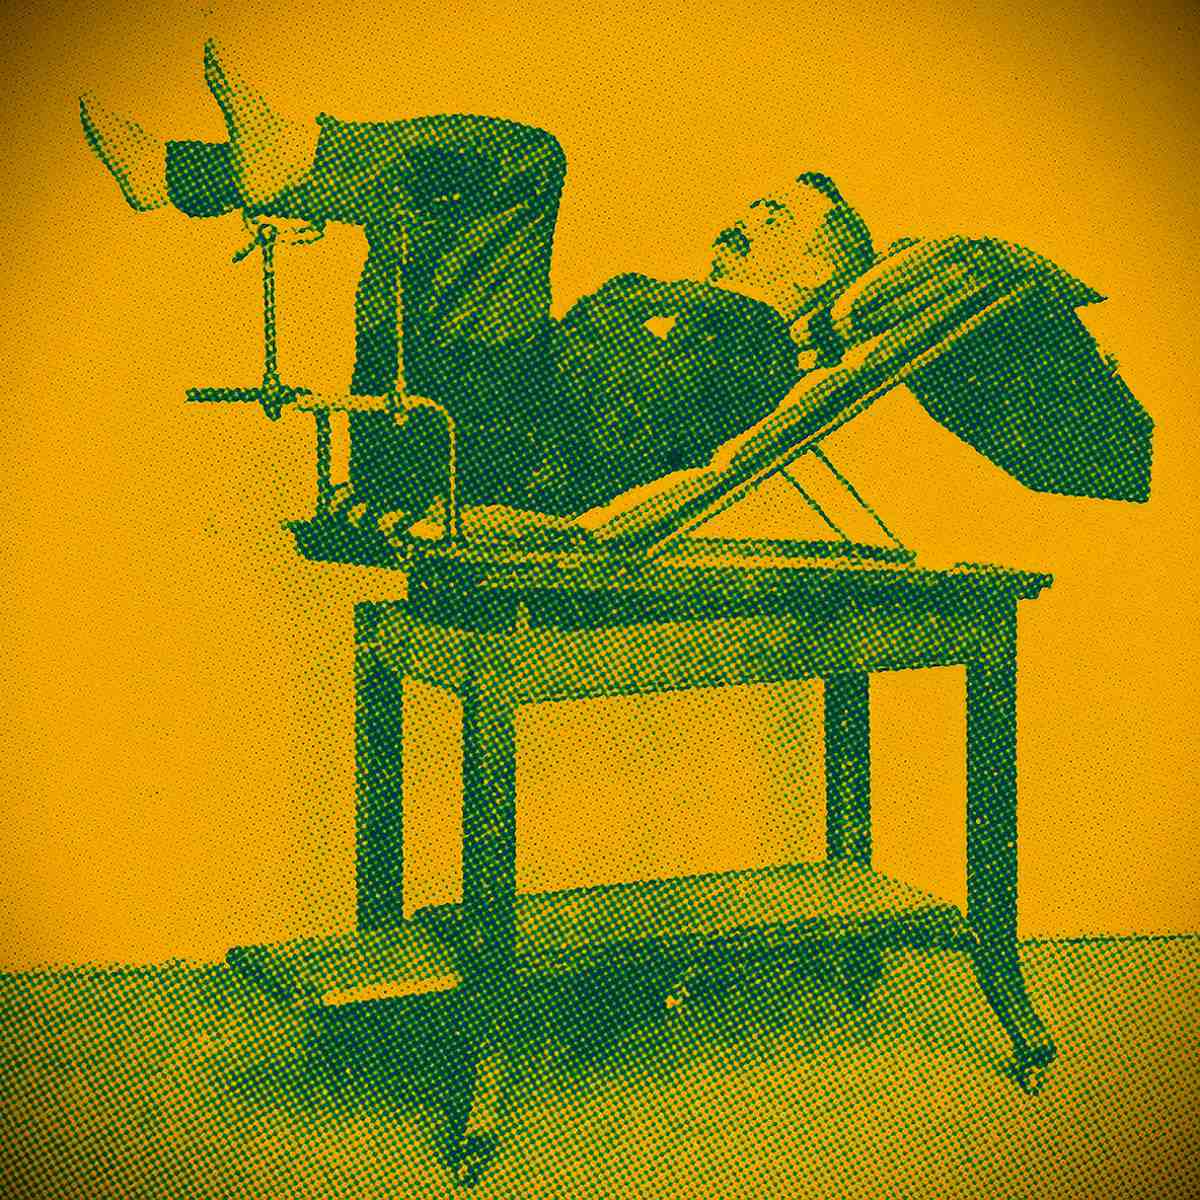 homem do século 19 demonstra terapia alternativa